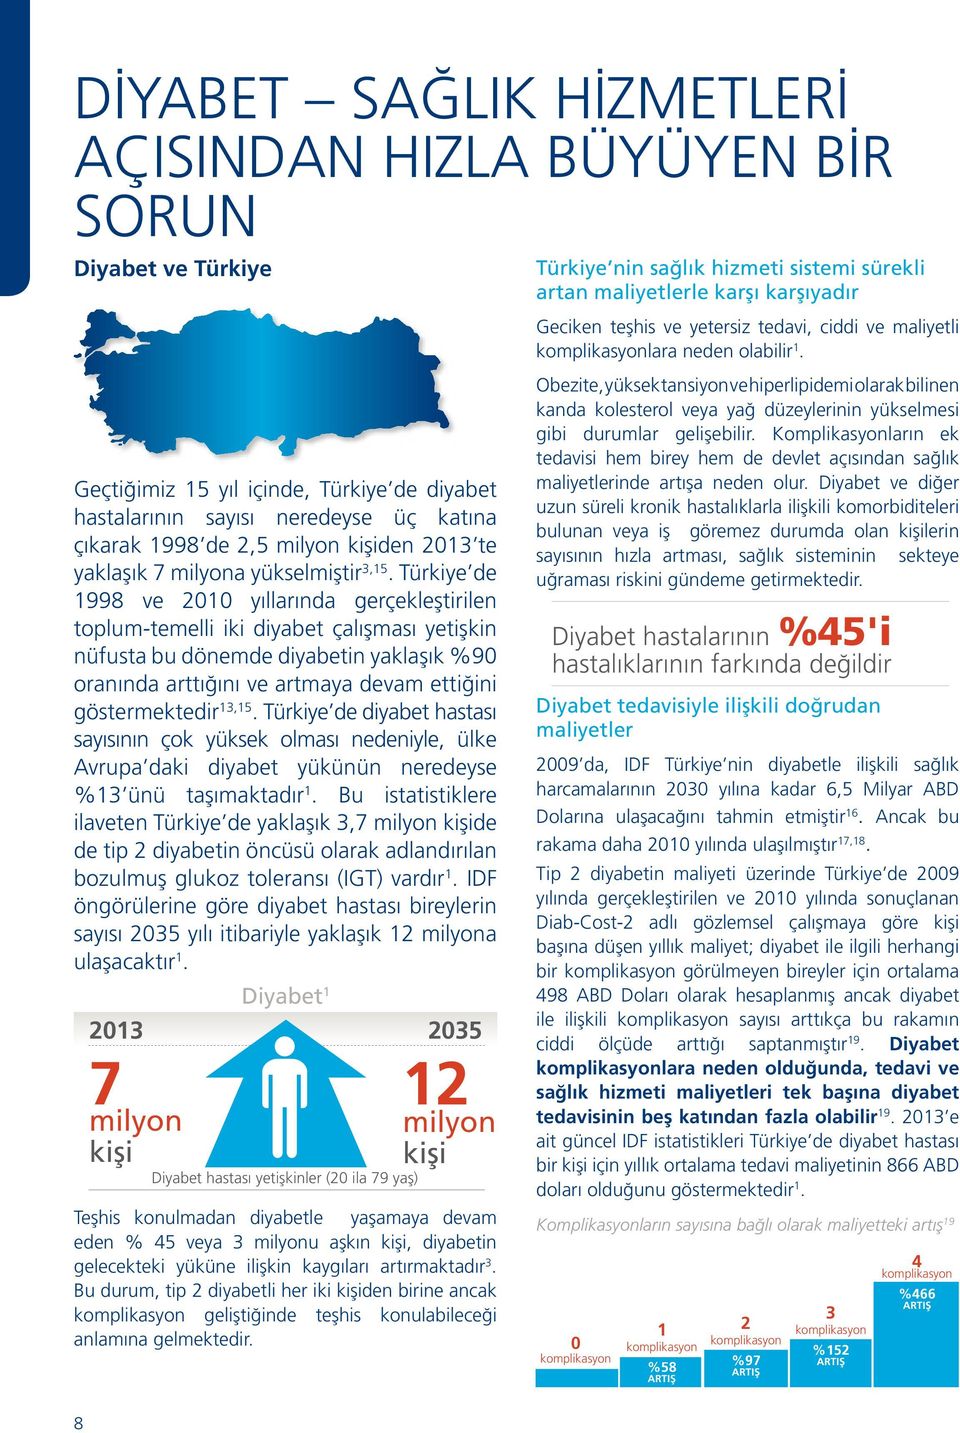 Türkiye de 1998 ve 2010 yıllarında gerçekleştirilen toplum-temelli iki diyabet çalışması yetişkin nüfusta bu dönemde diyabetin yaklaşık %90 oranında arttığını ve artmaya devam ettiğini göstermektedir